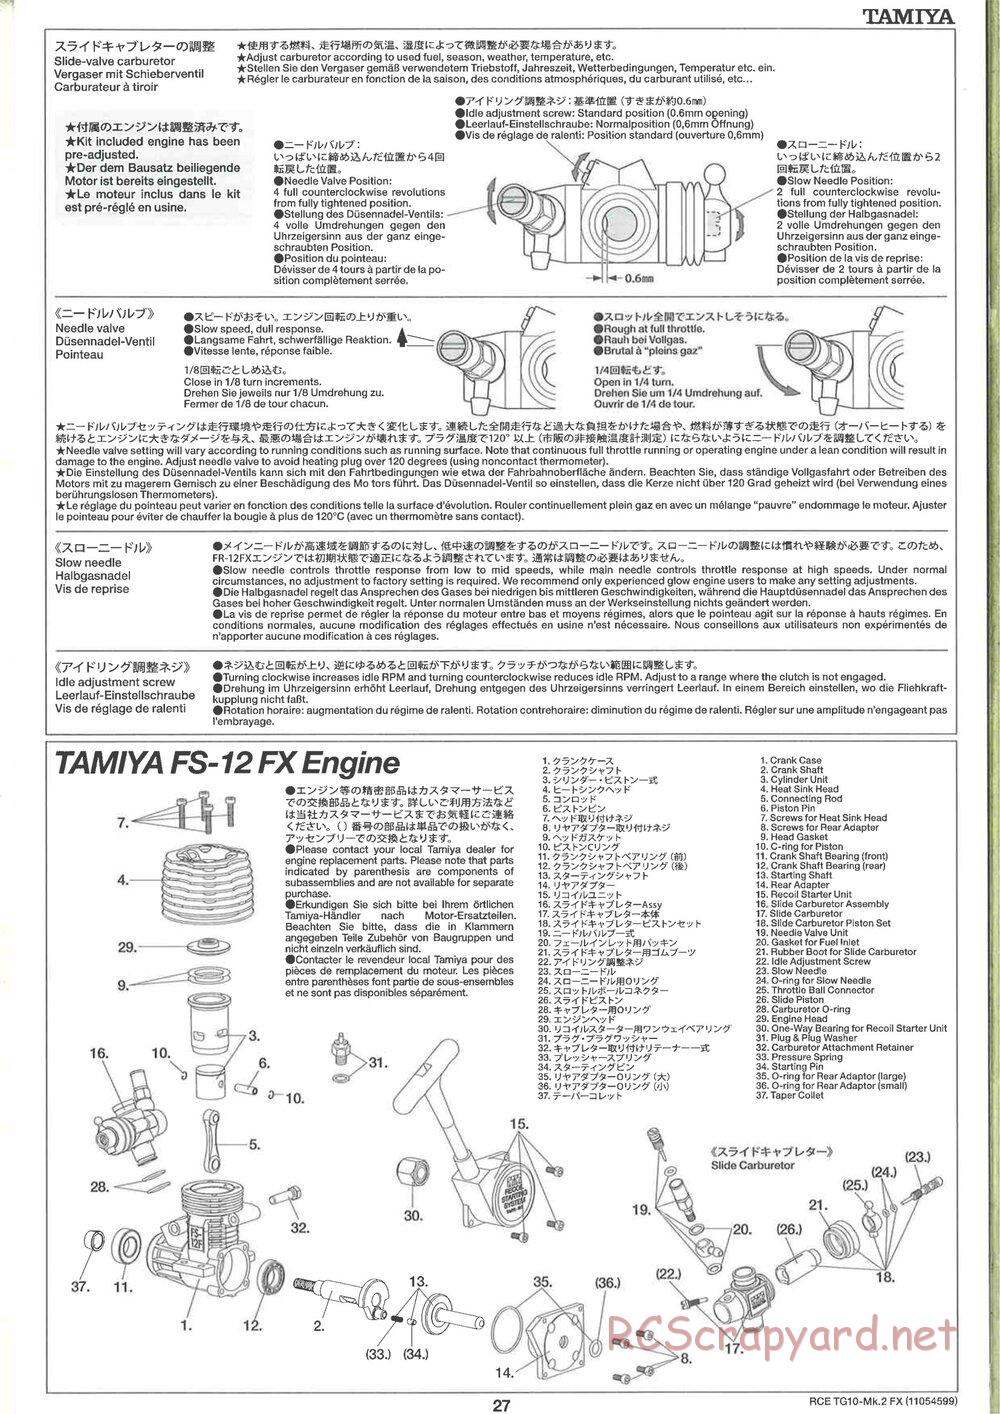 Tamiya - TG10 Mk.2 FX Chassis - Manual - Page 27